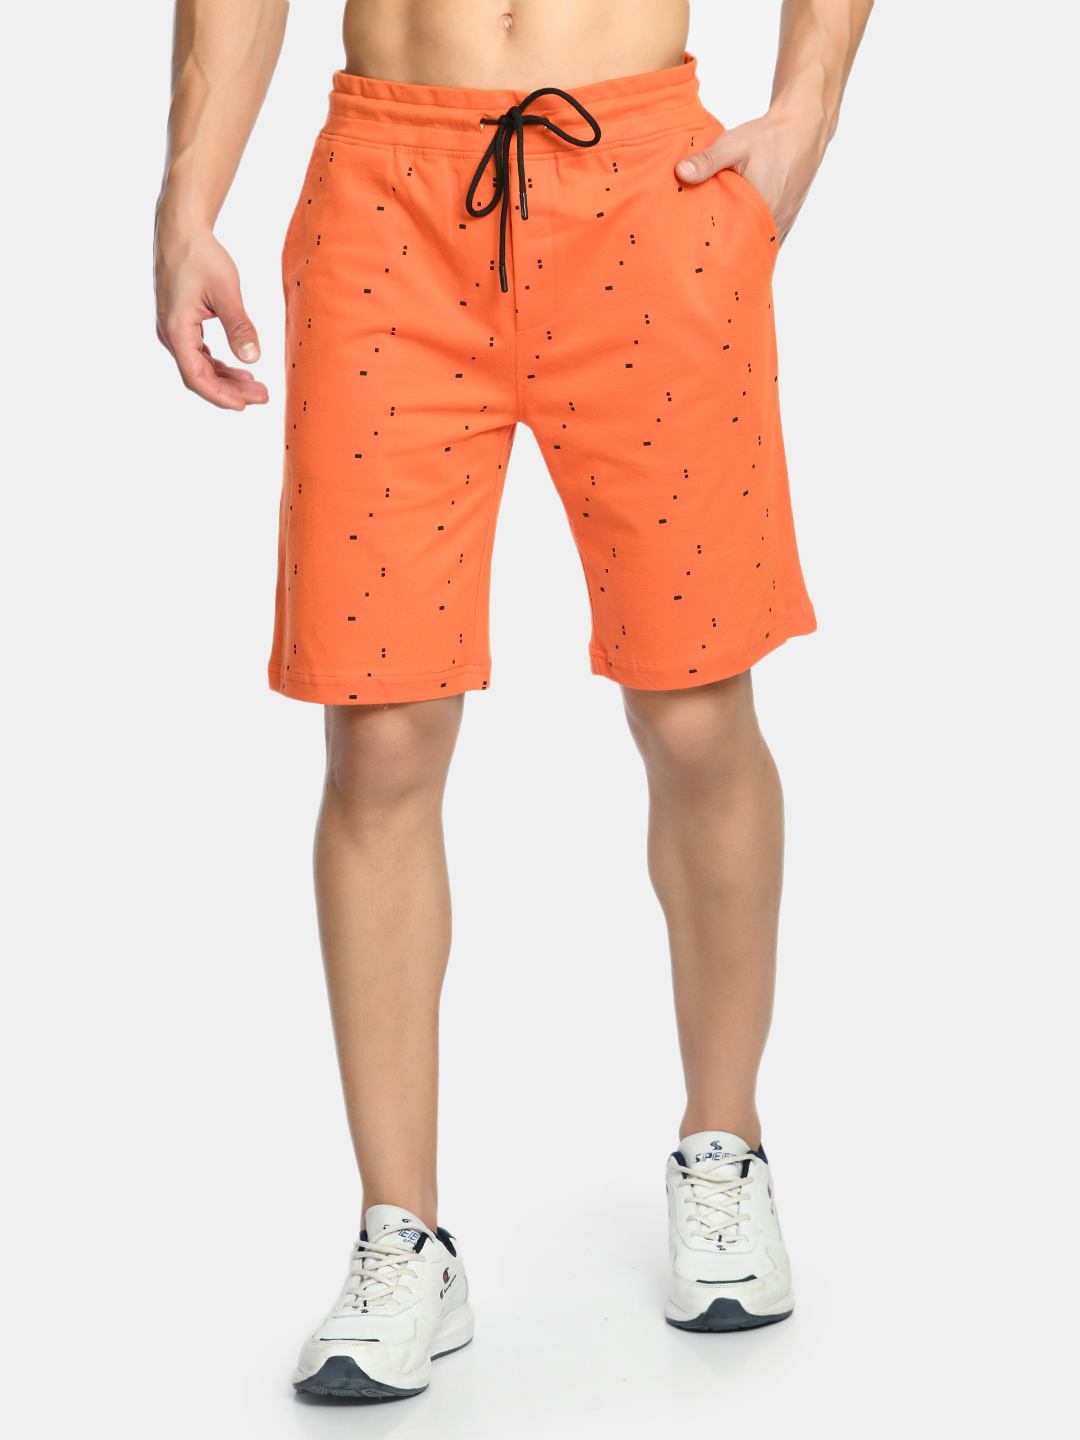 Men's Orange Drawstring Waist Printed Shorts